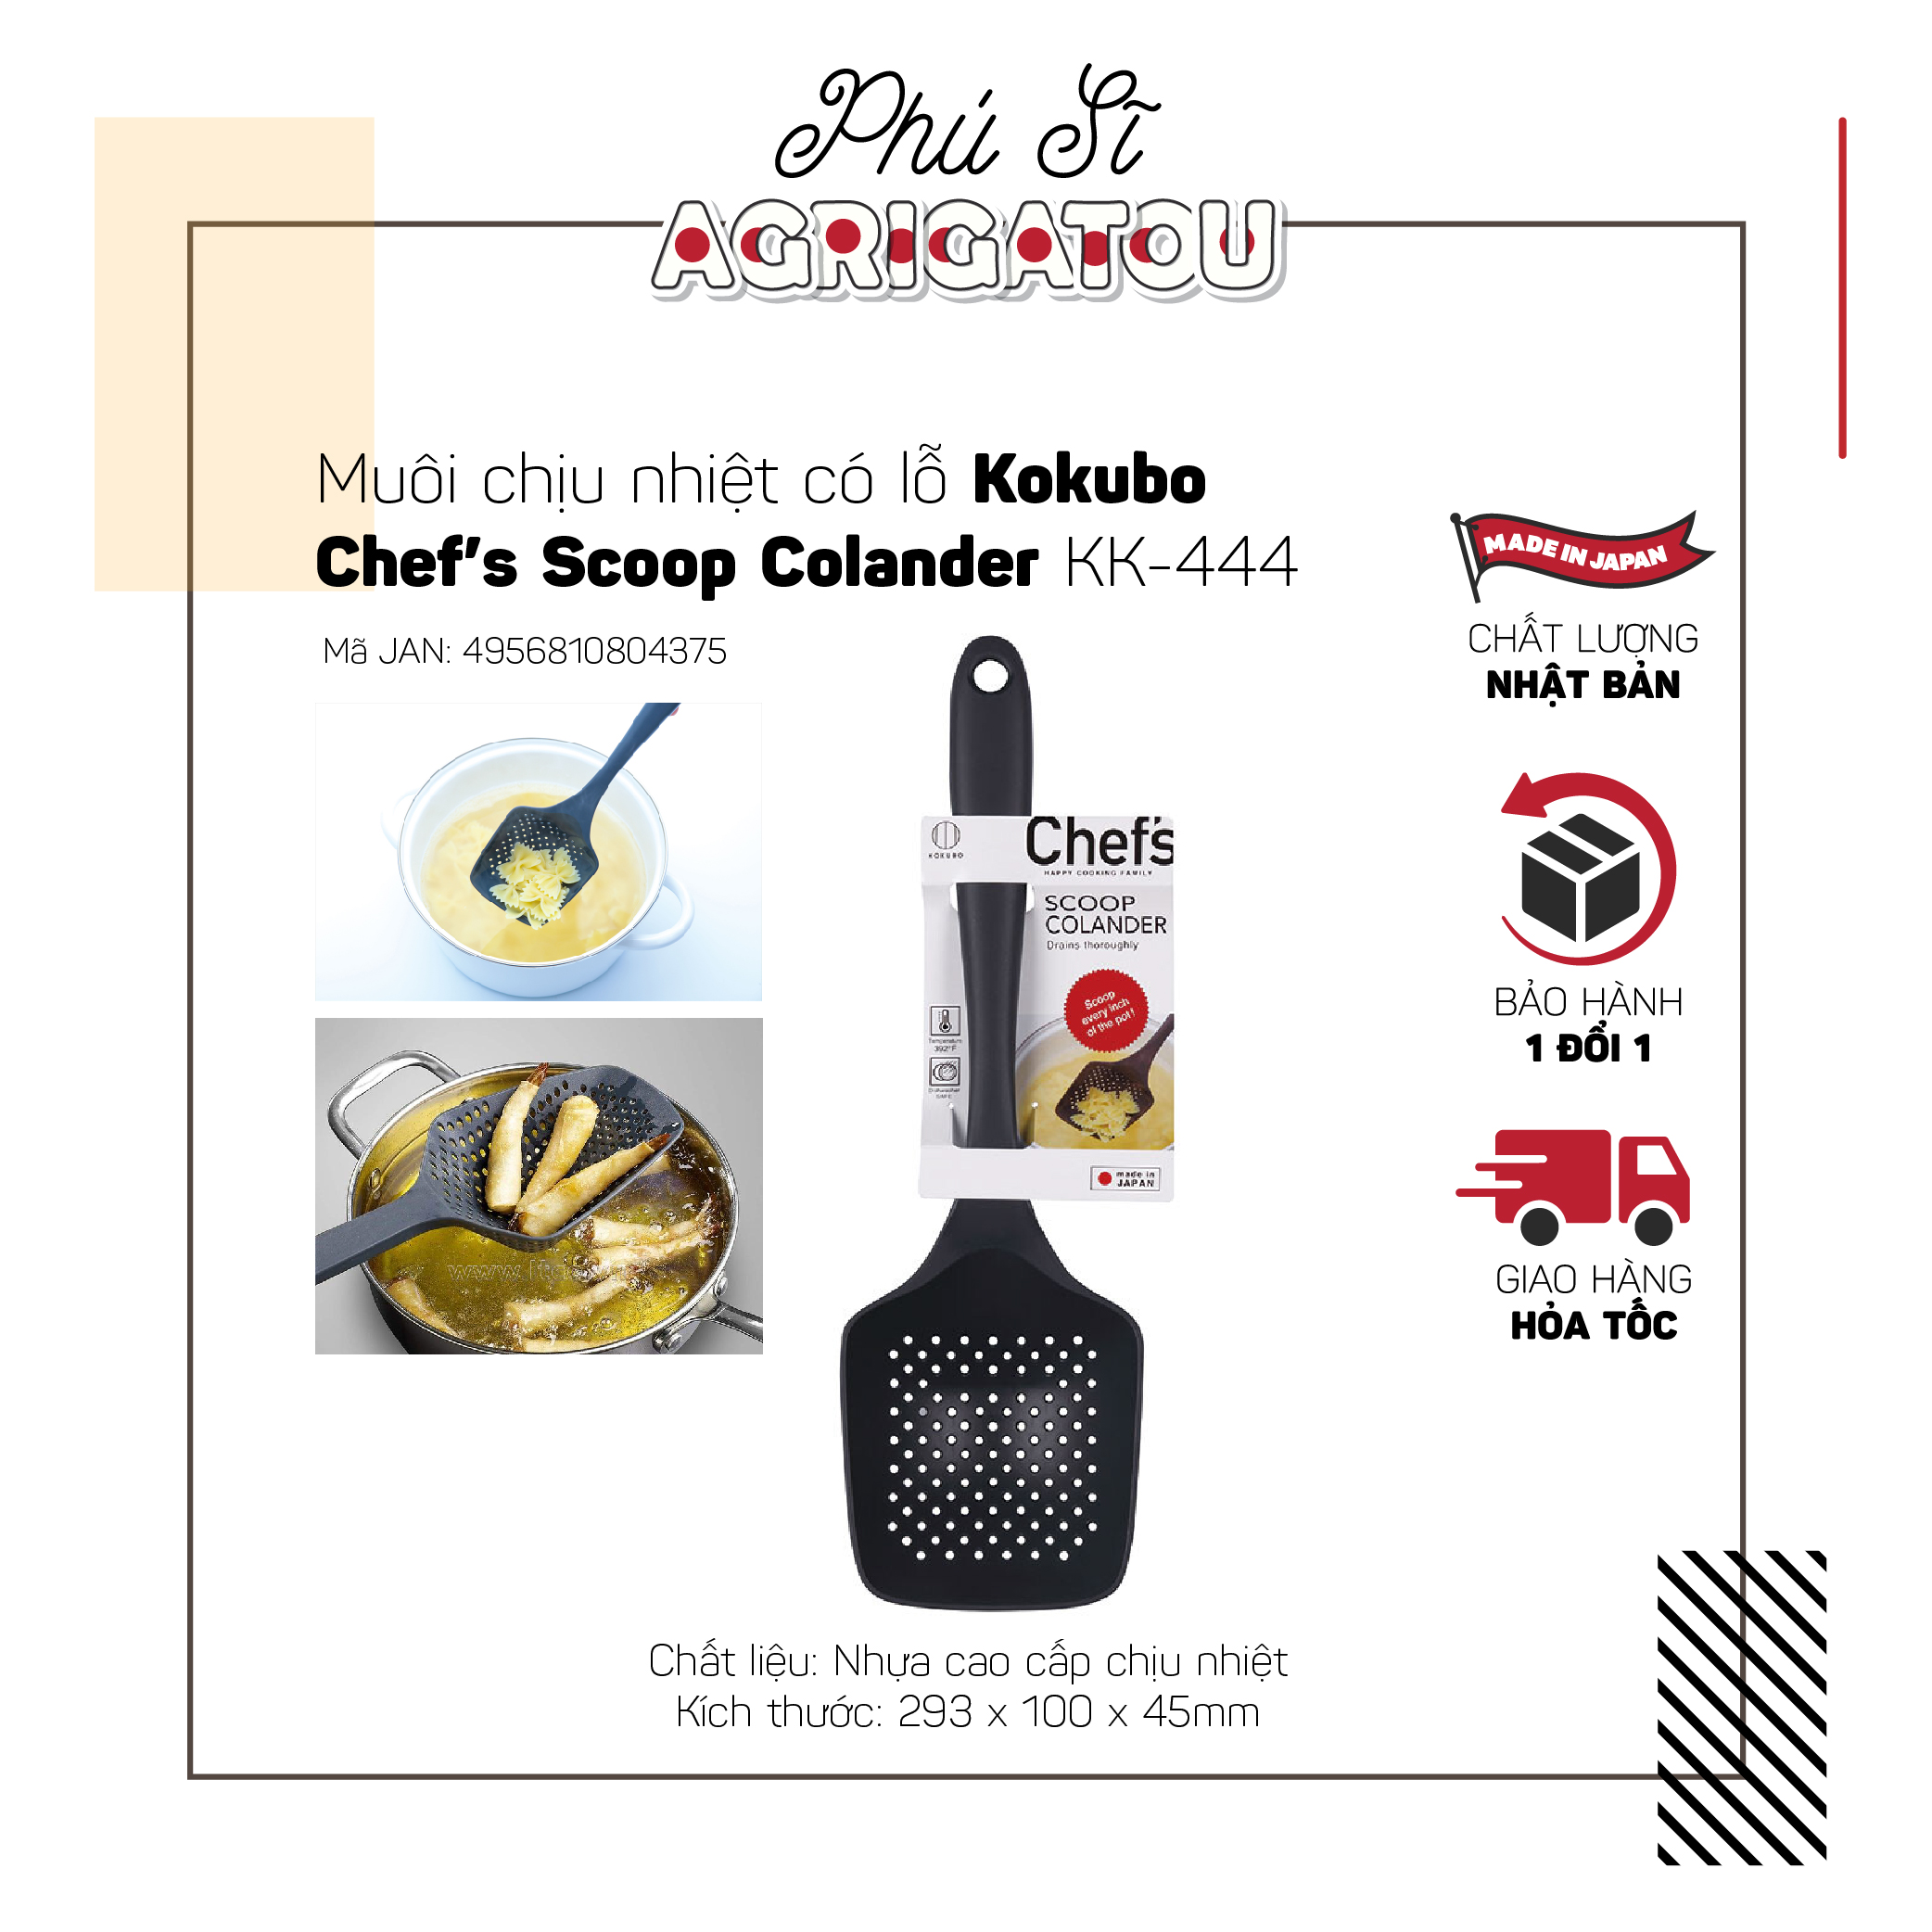 Muôi chịu nhiệt có lỗ Kokubo Chef tool K-444